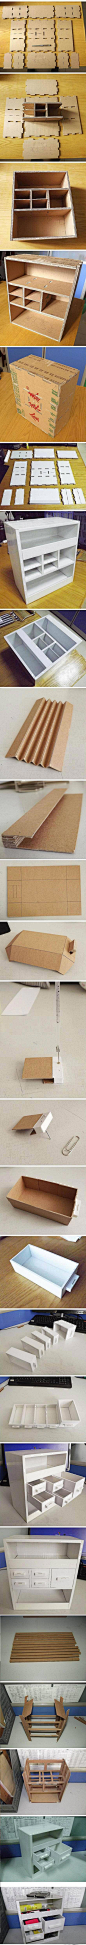 纸箱竟然改造成这么精致的柜子 #废物利用#